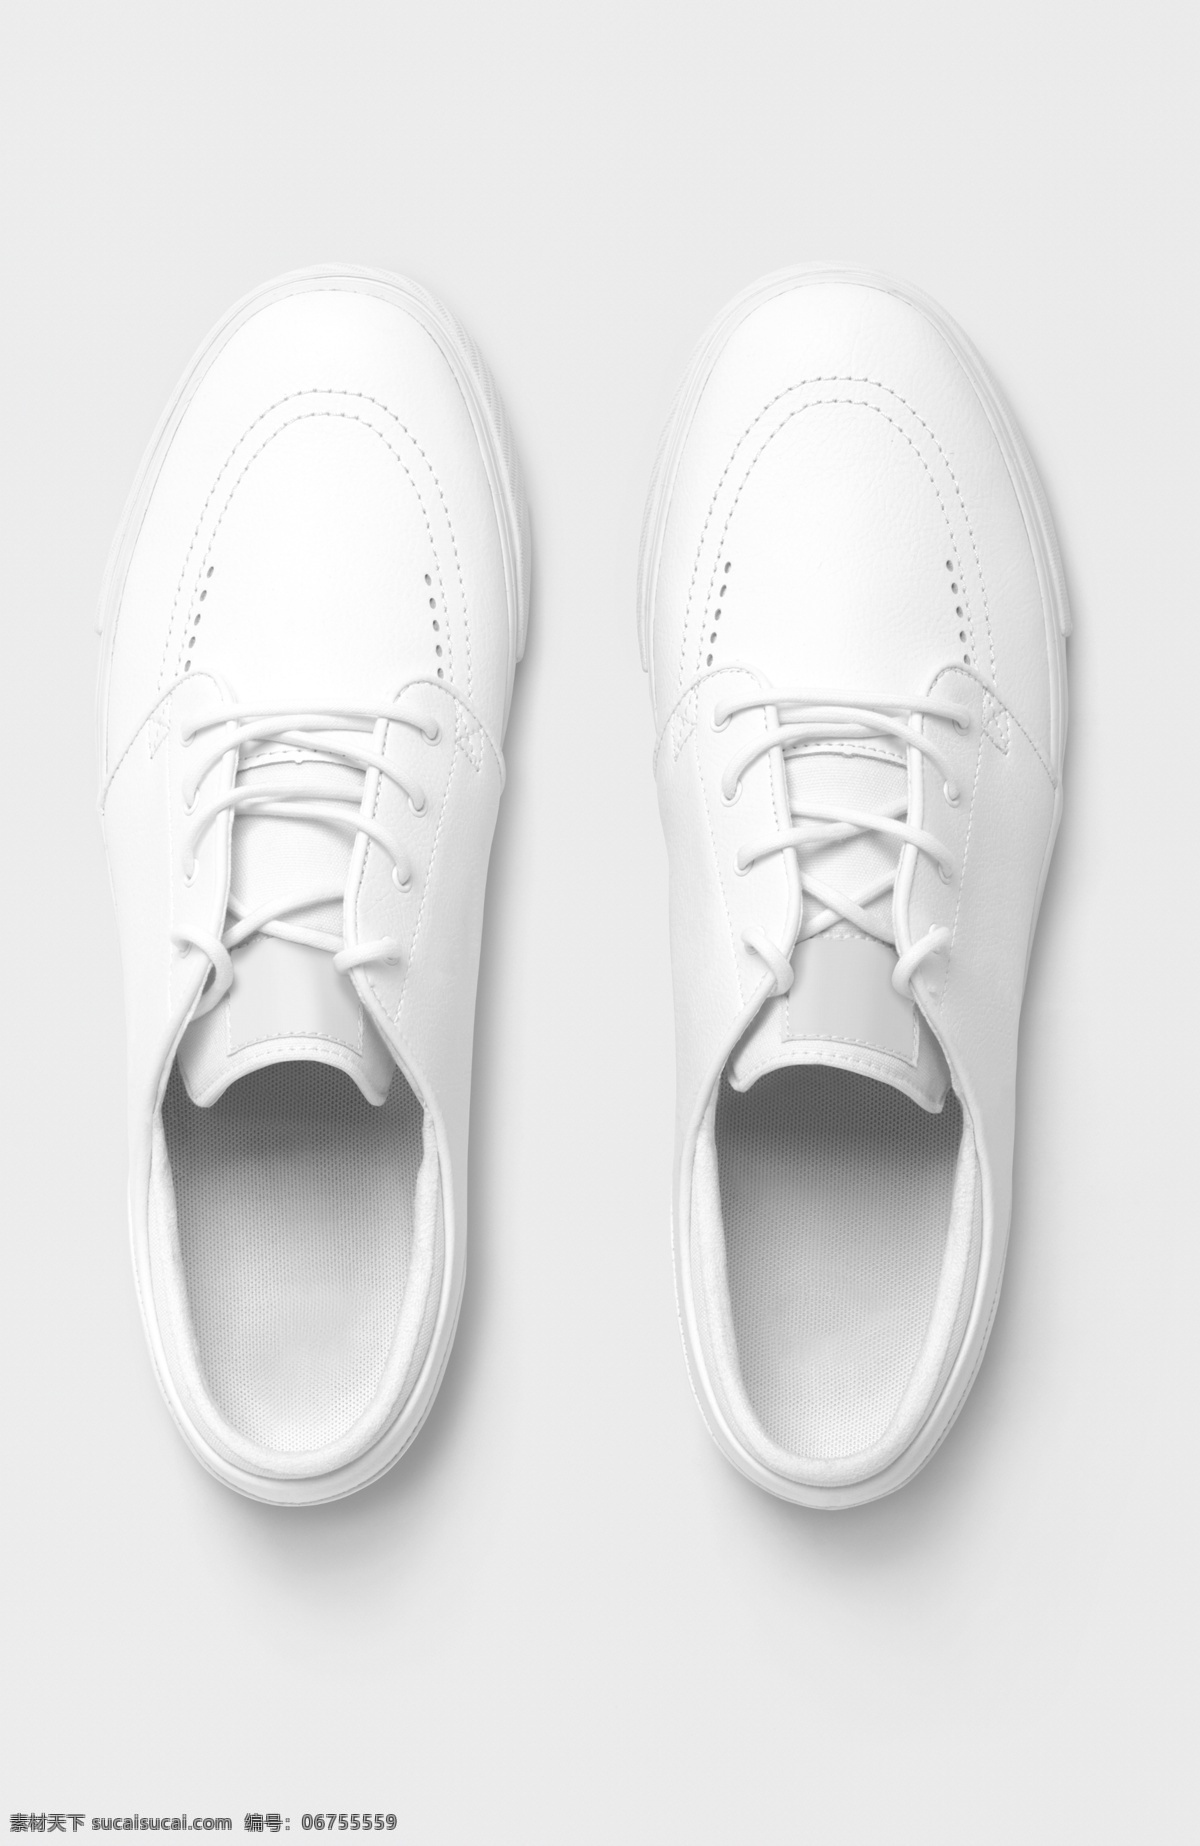 帆布鞋 板鞋 小白鞋 白鞋 休闲板鞋 各种物料贴图 分层